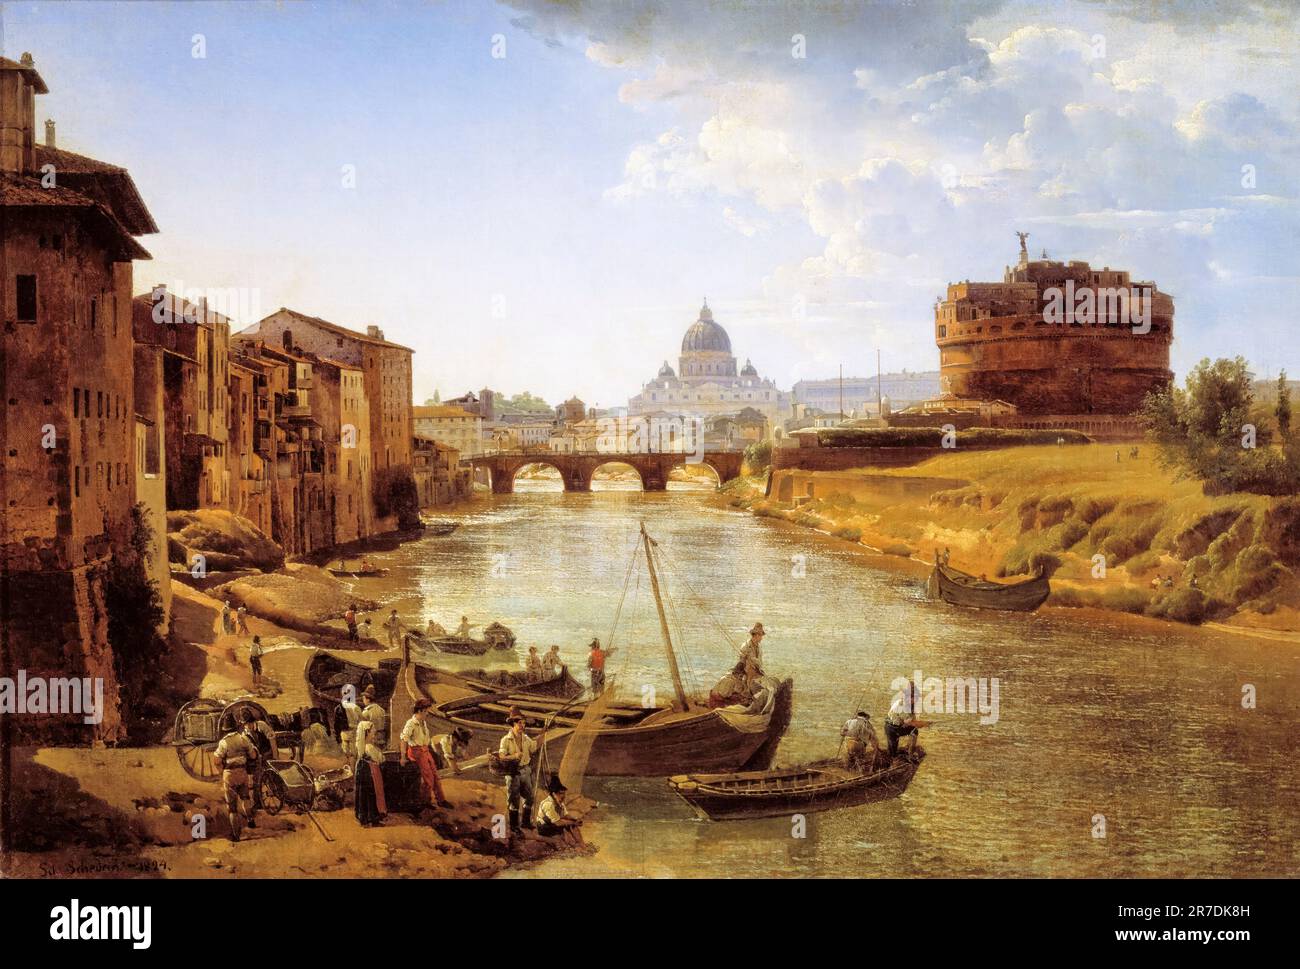 Sylvester Shchedrin, Nuova Roma, il Castello di S,Angelo (Castel Sant'Angelo), pittura paesaggistica in olio su tela, 1824-1825 Foto Stock